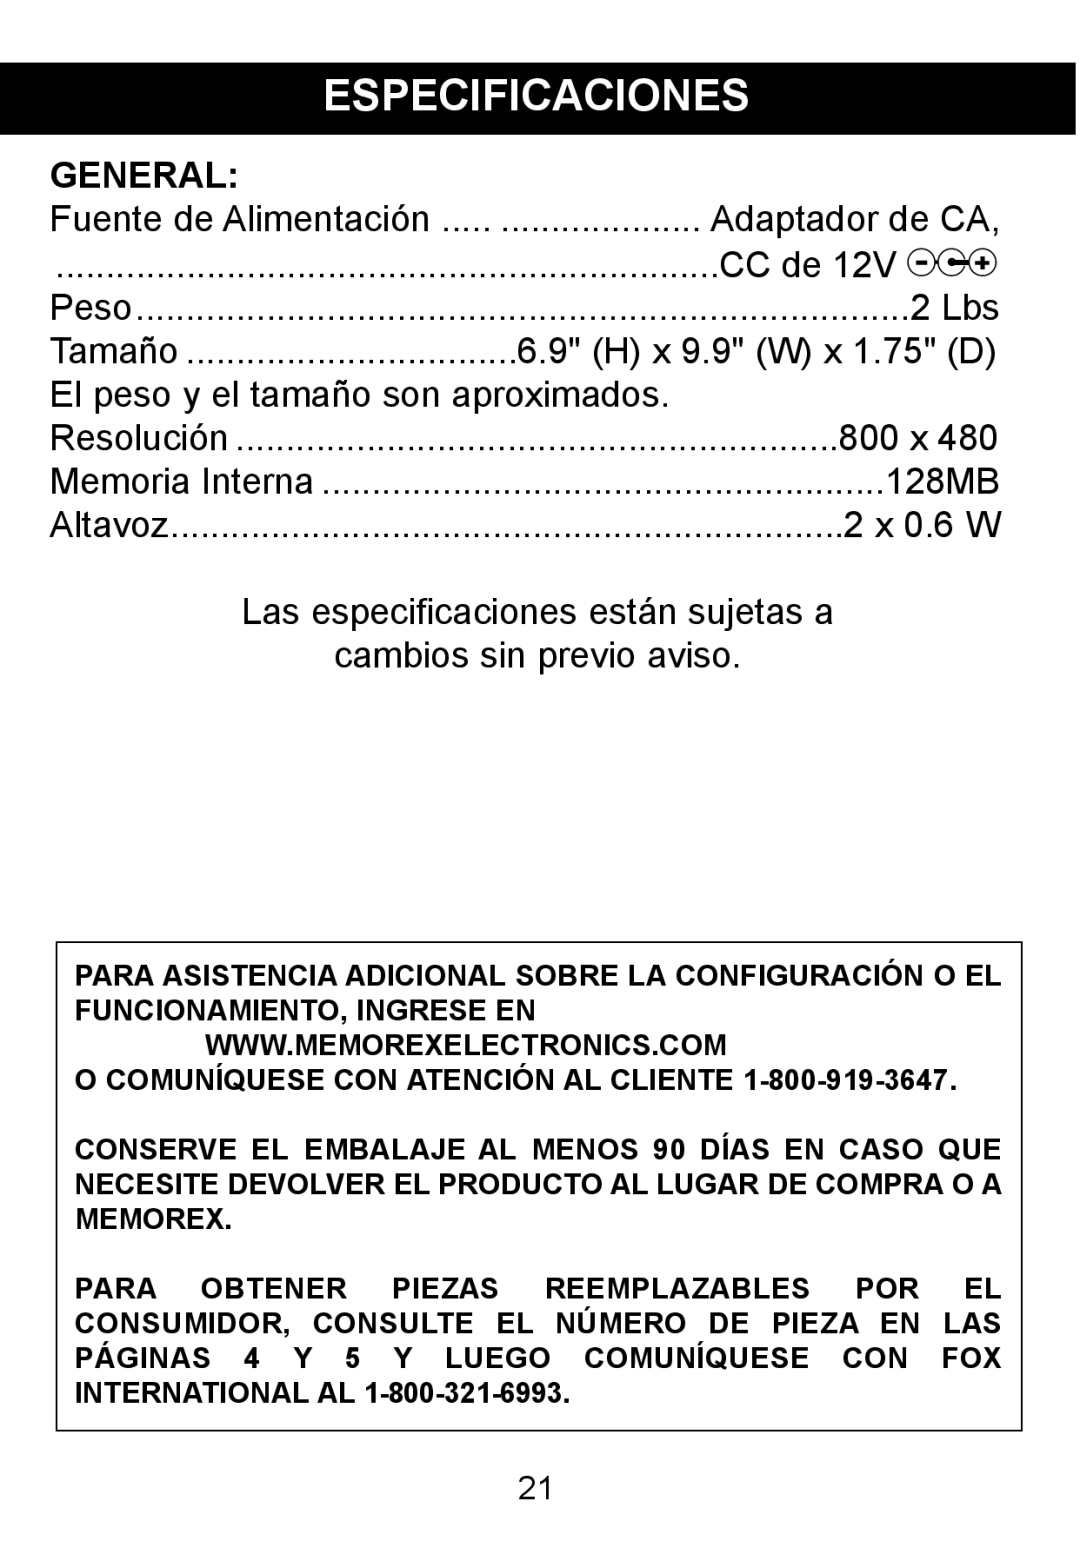 Memorex MDF8402-LWD manual Especificaciones, General, Fuente de Alimentación, CC de 12V Z, 2 Lbs, H x 9.9 W x 1.75 D, 800 x 